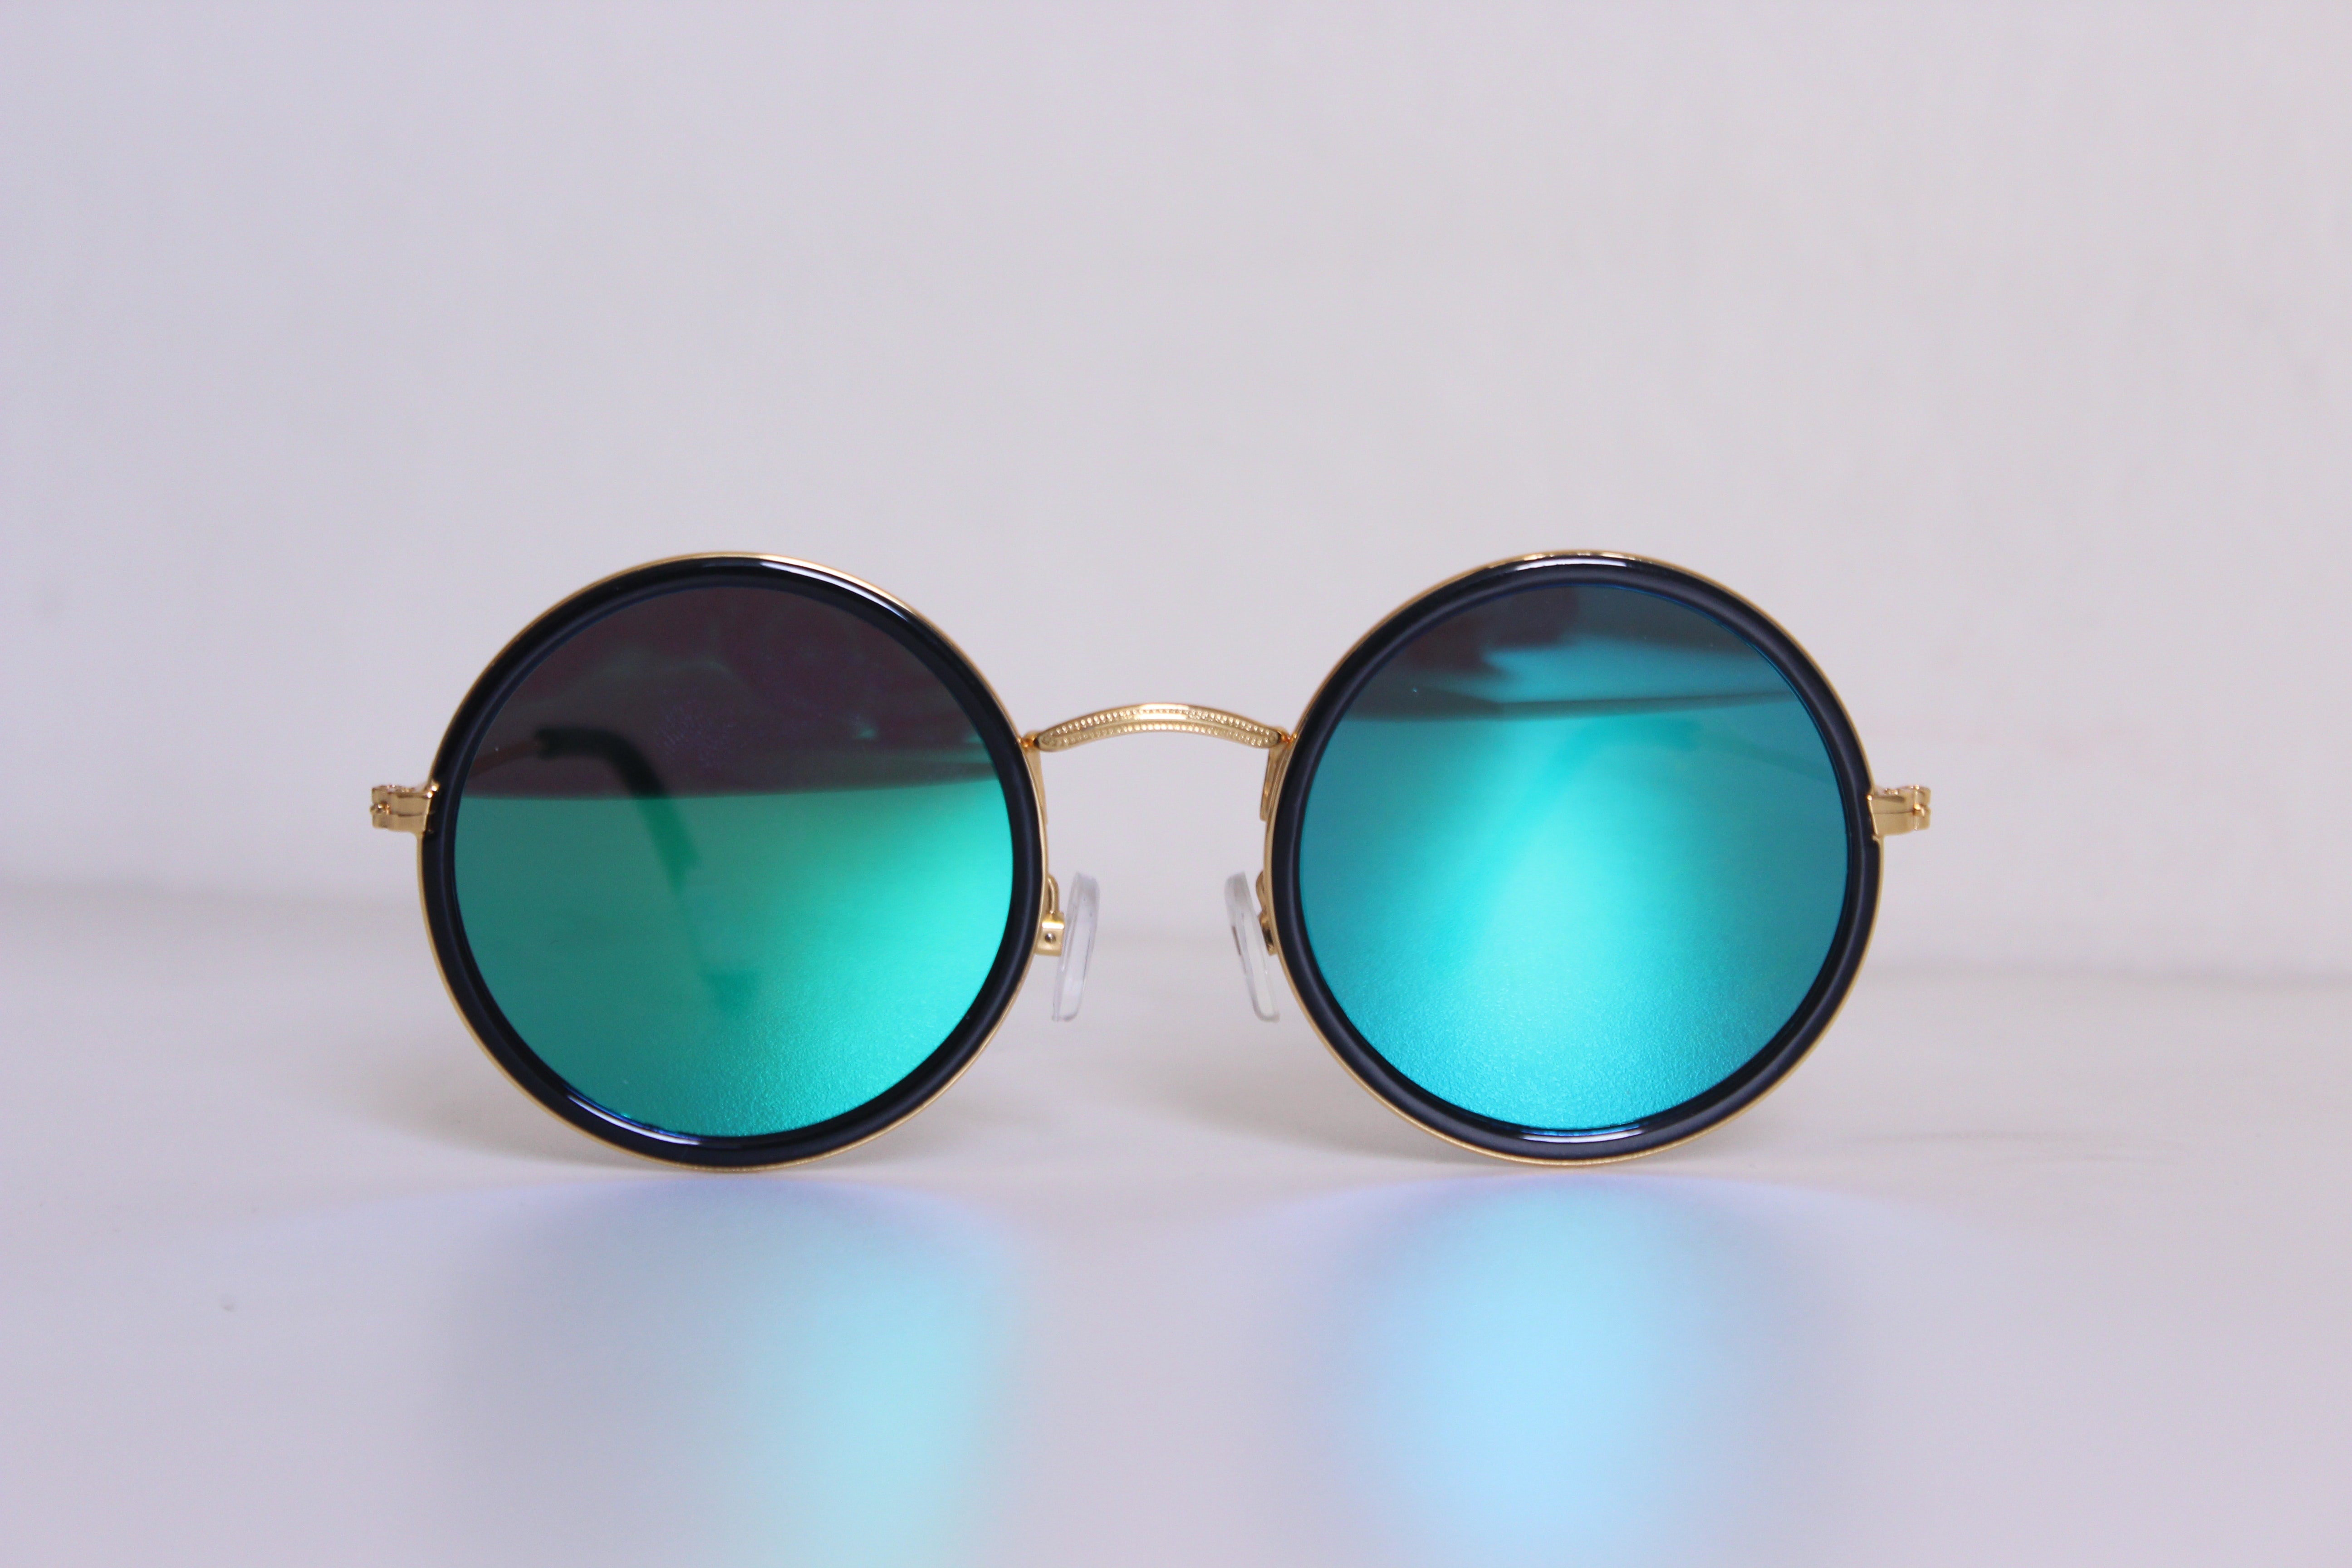 Men's Sunglasses: Rounded Frames